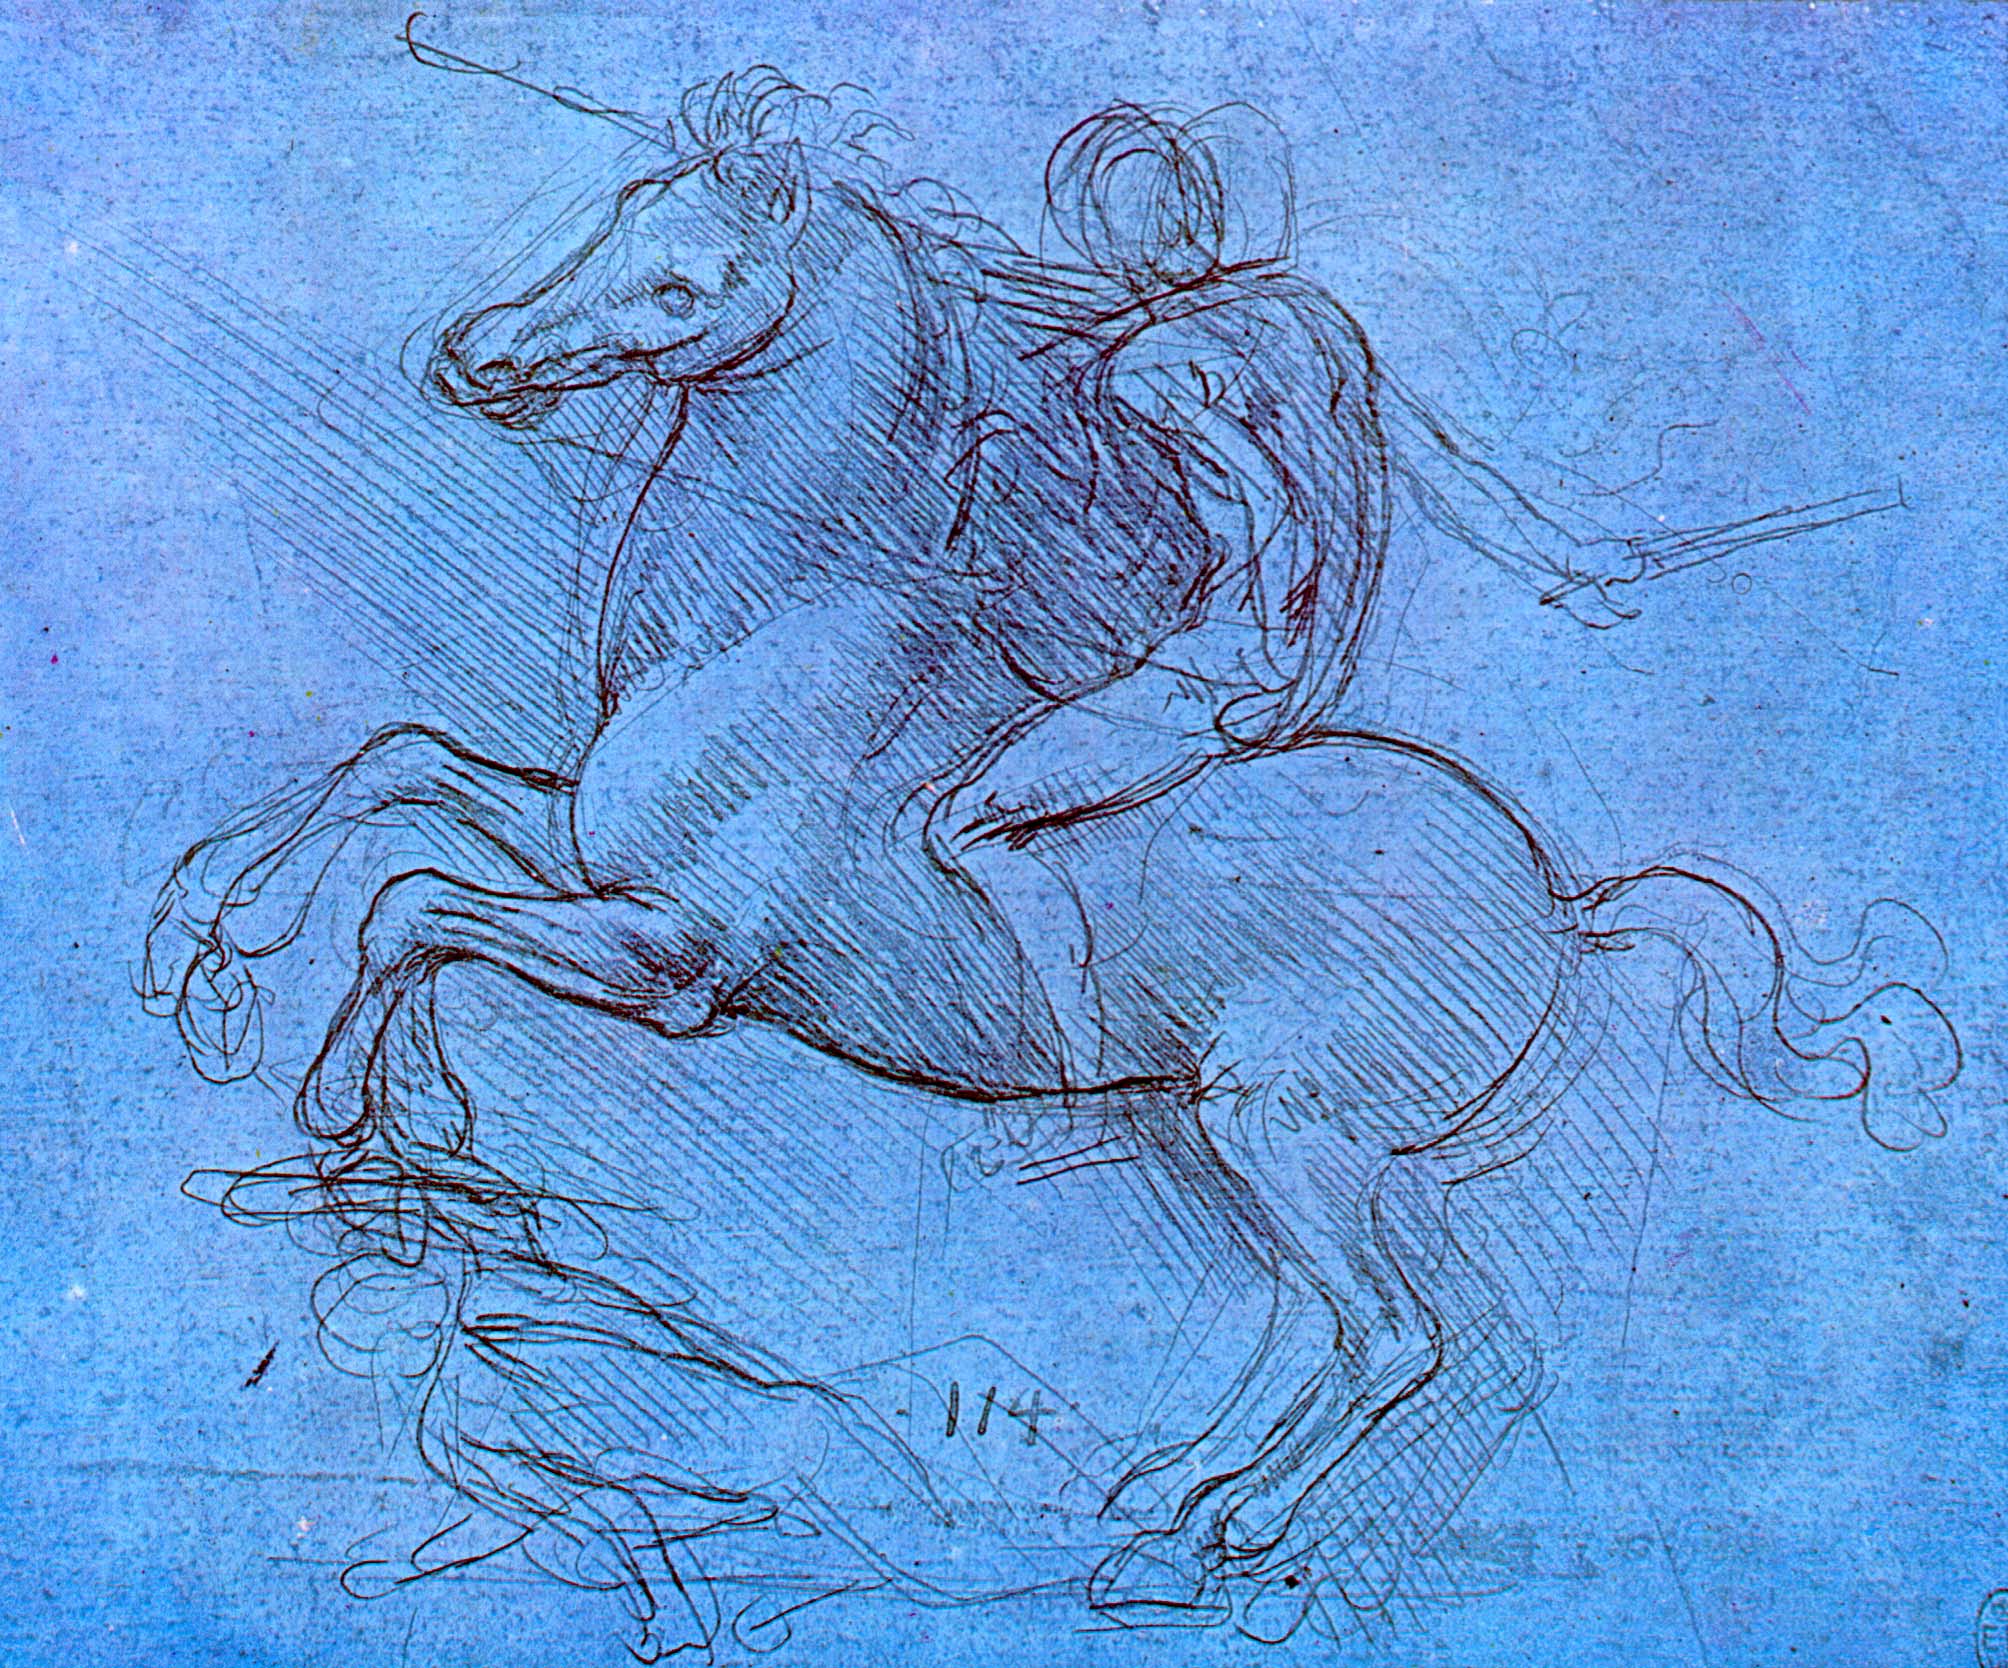 Леонардо да Винчи. Всадник, поднявший коня на дыбы и поверженный.